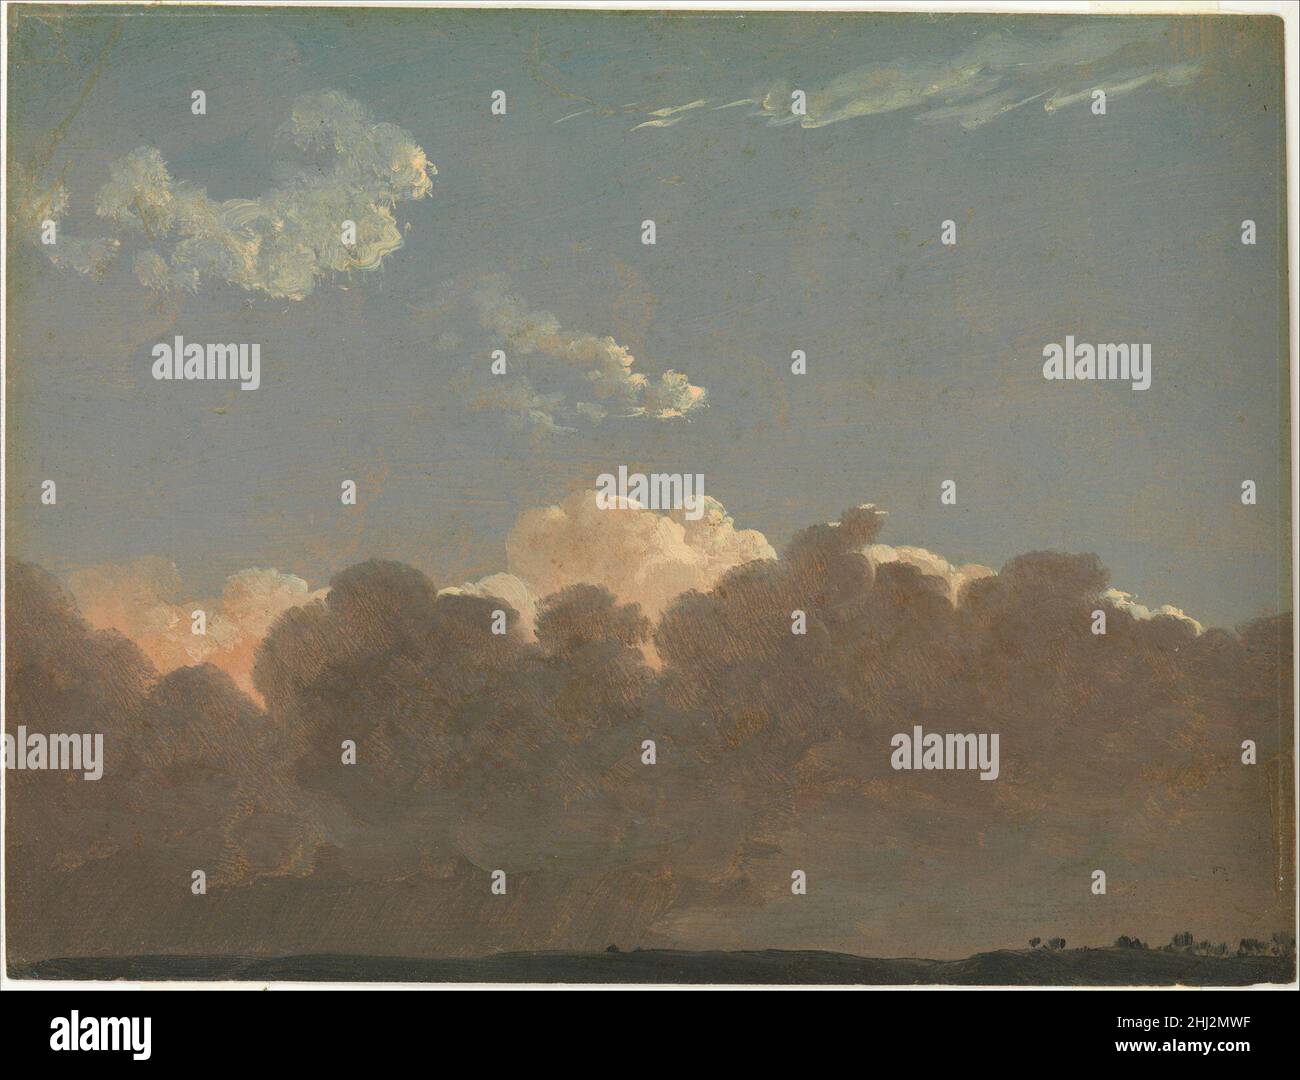 Étude sur le Cloud (tempête à distance) env.1786–1806 Simon Denis Flamand cette étude montre une gamme de conditions climatiques empilées l'une au-dessus de l'autre.Il s'éclaircit progressivement sur un espace qui s'étend sur des milliers de pieds, de la pluie en bas à gauche au ciel clair en haut.Les croquis plein air de Denis illustrent parfaitement l’adhésion des Lumières à la recherche empirique dans la recherche du savoir.L'artiste a employé l'effet particulier vu ici dans les peintures finies de?le 1790s, et peut-être plus tôt.Étude sur le Cloud (tempête à distance).Simon Denis (flamand, Anvers 1755–1813 Naples). Env.1786–1806.Huile sur papier. Banque D'Images